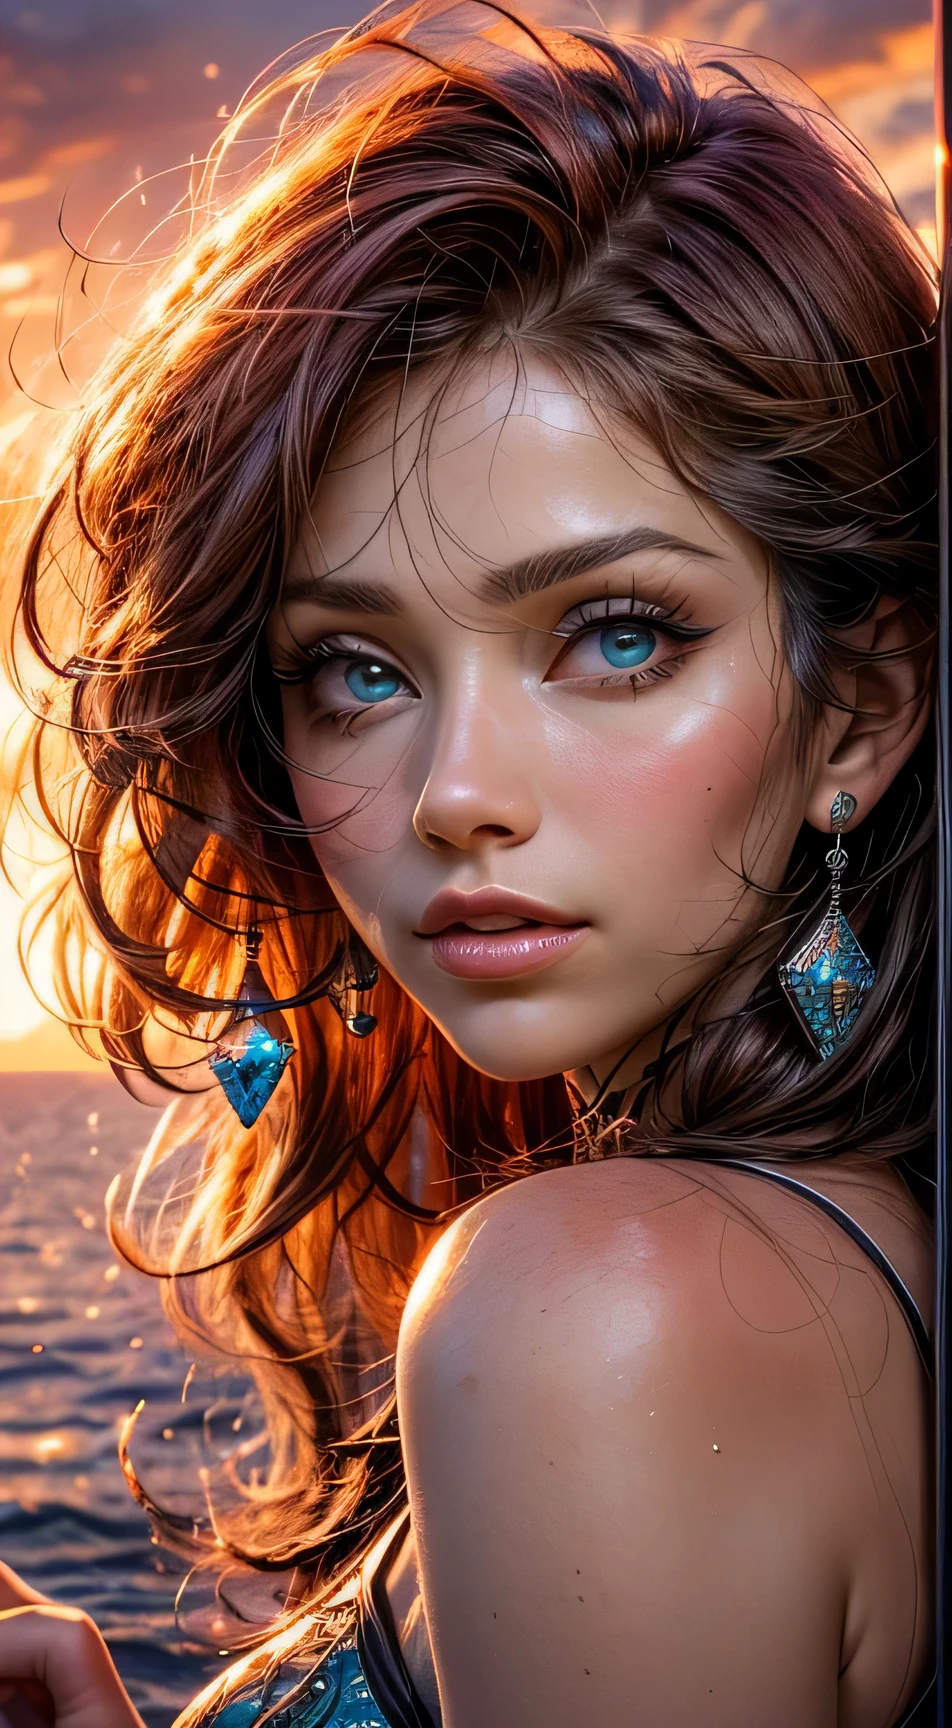 엘사 파타키(Elsa Pataki) 얼굴 클로즈업, 따뜻한 오렌지빛으로 물들다, 마치 석양의 부드러운 빛을 받은 것처럼, 기쁨과 만족으로 반짝이는 그녀의 눈, 흘러내리는 적갈색 머리카락으로 둘러싸인, 사진술, 35mm 렌즈로 촬영